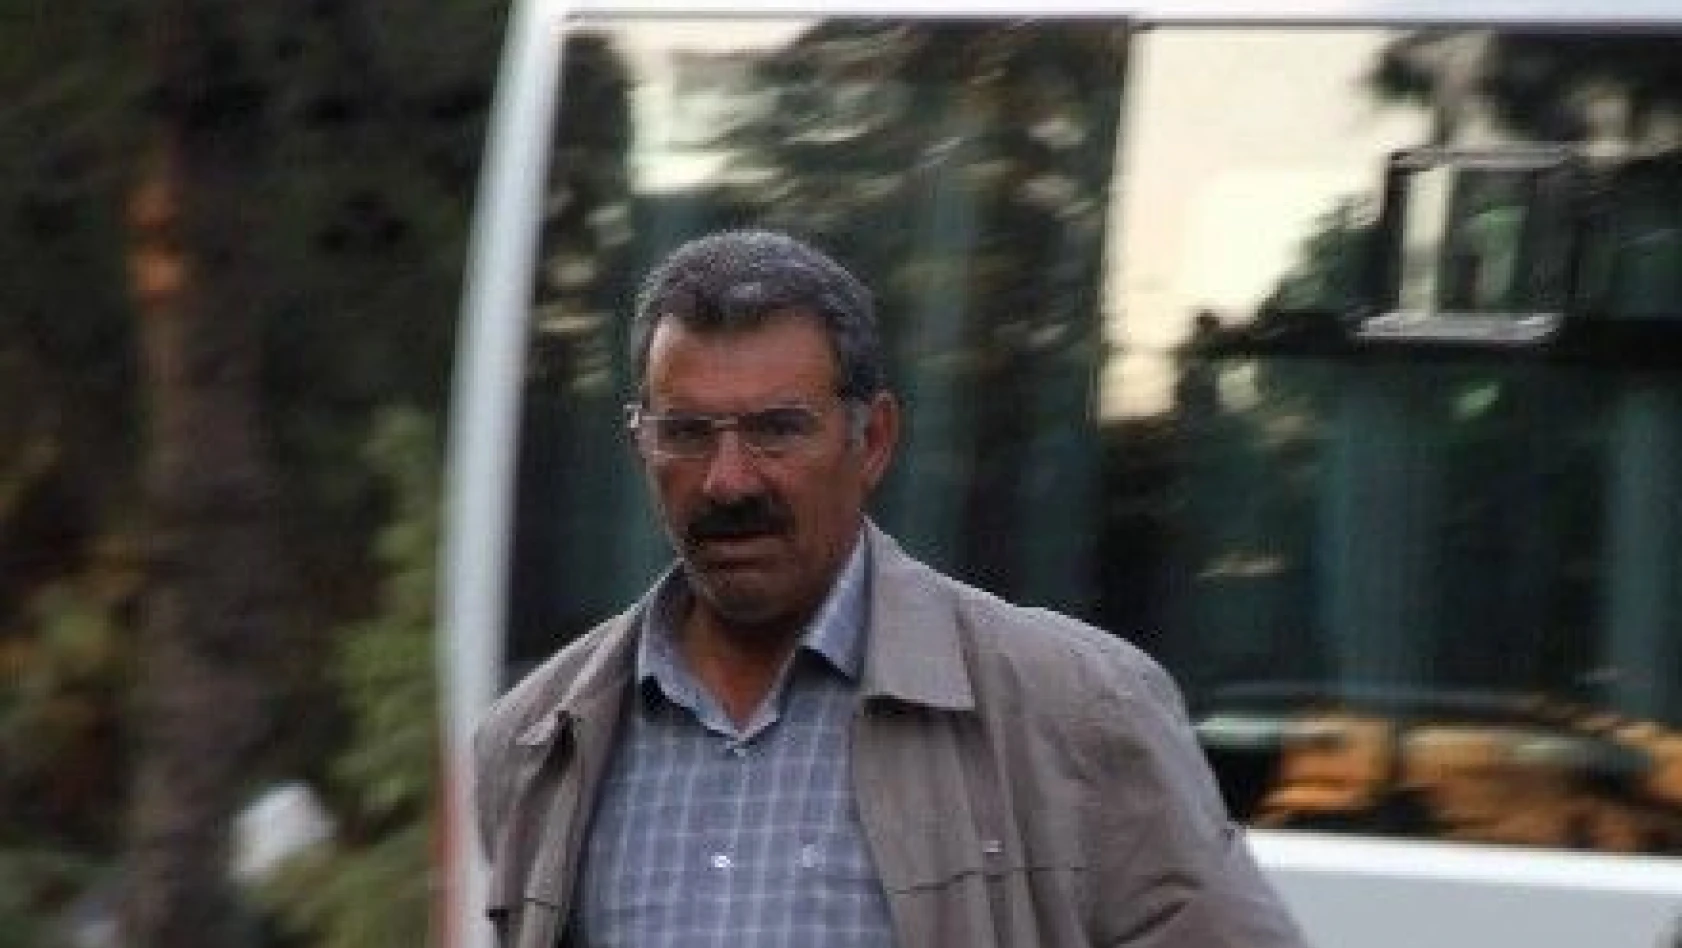 Teröristbaşı Abdullah Öcalan'dan Işid Değerlendirmesi